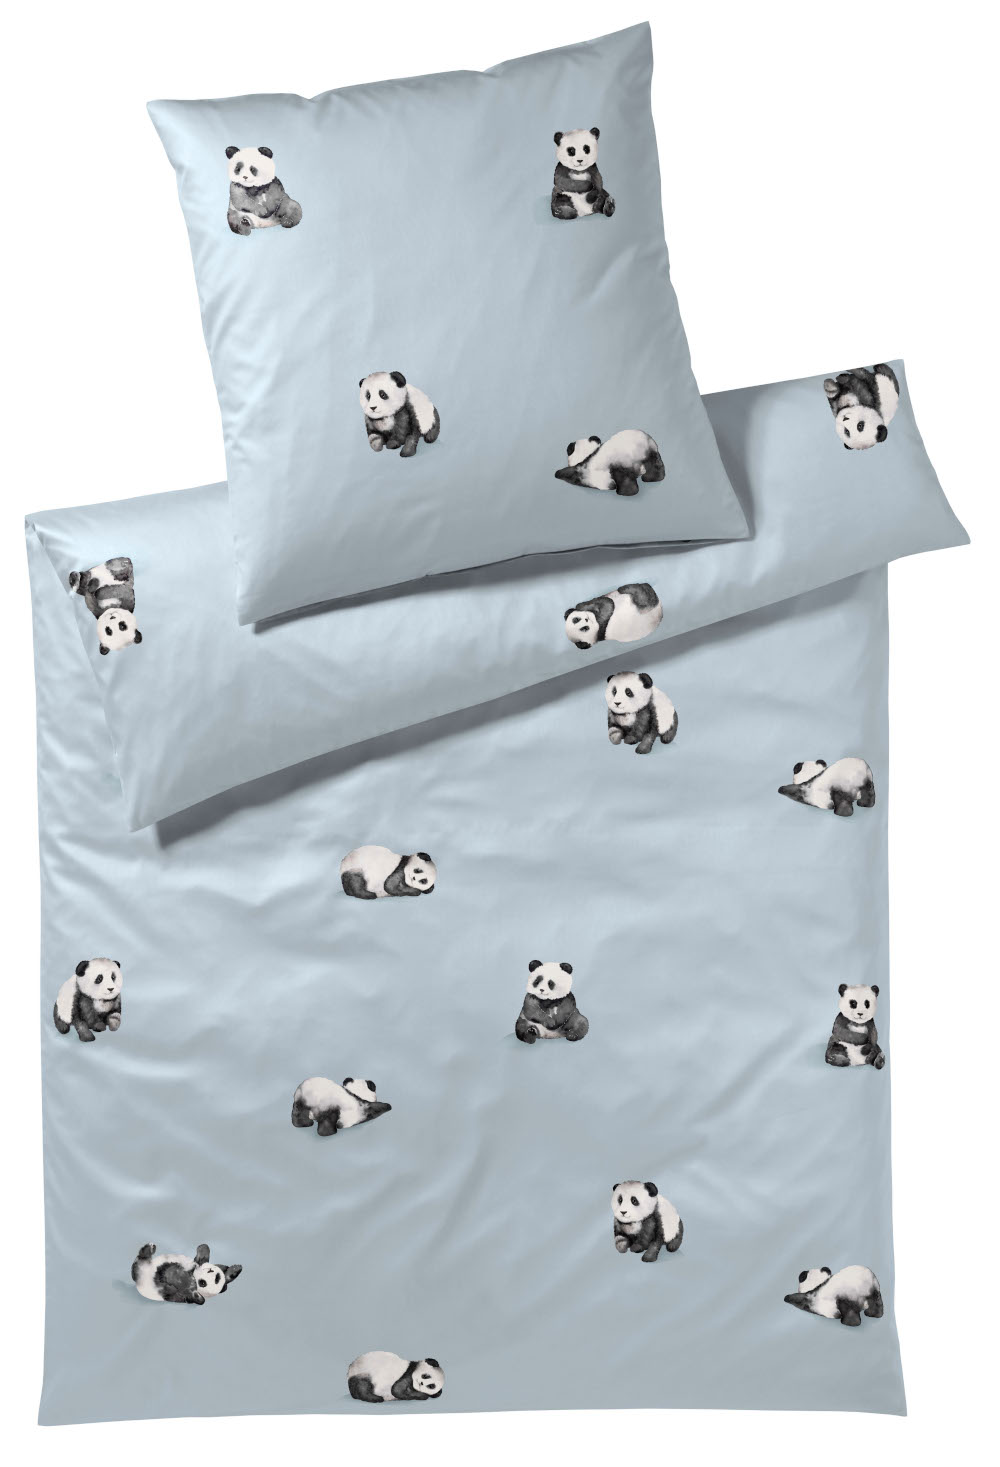 Elegante Kinderbettwäsche Panda Bear, Satin aus 100% Baumwolle, 100x135 cm 